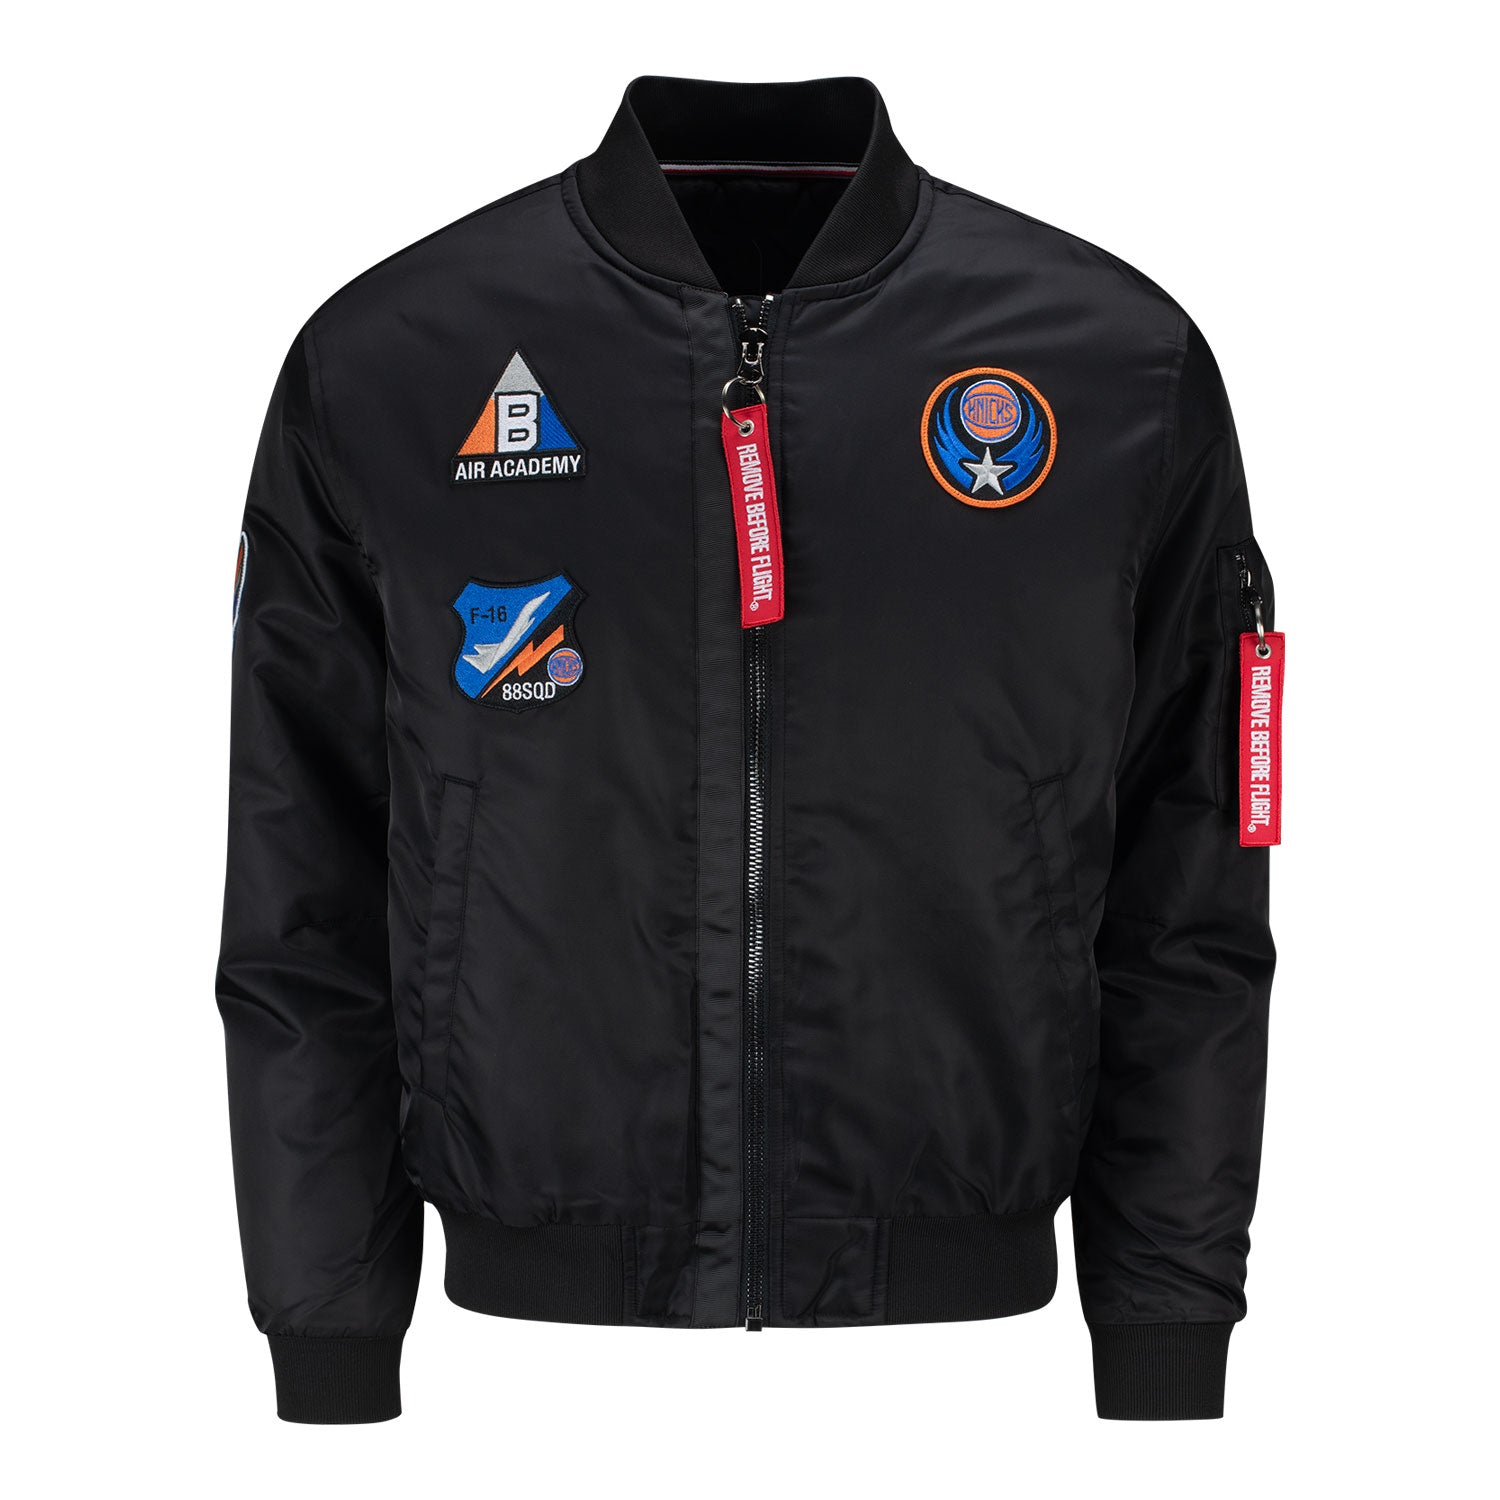 FISLL Knicks Flight Jacket